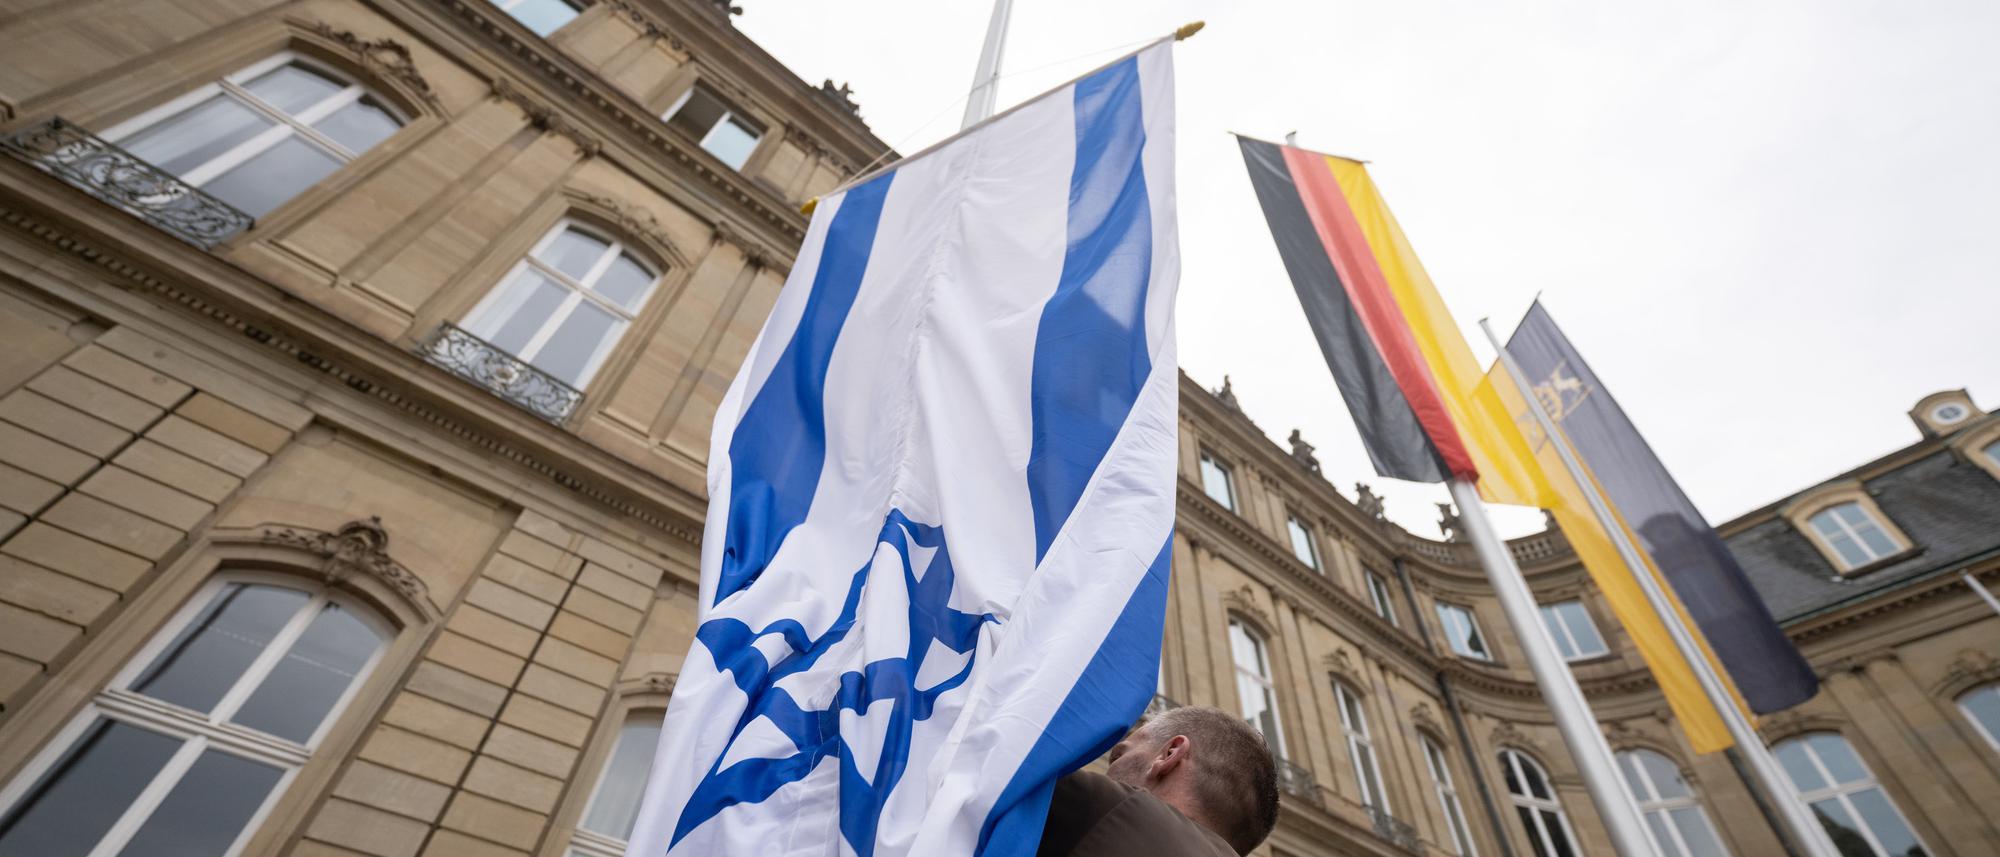 Innenministerien der Bundesländer bestätigen: Israel-Flaggen in 176 Fällen  beschädigt oder gestohlen